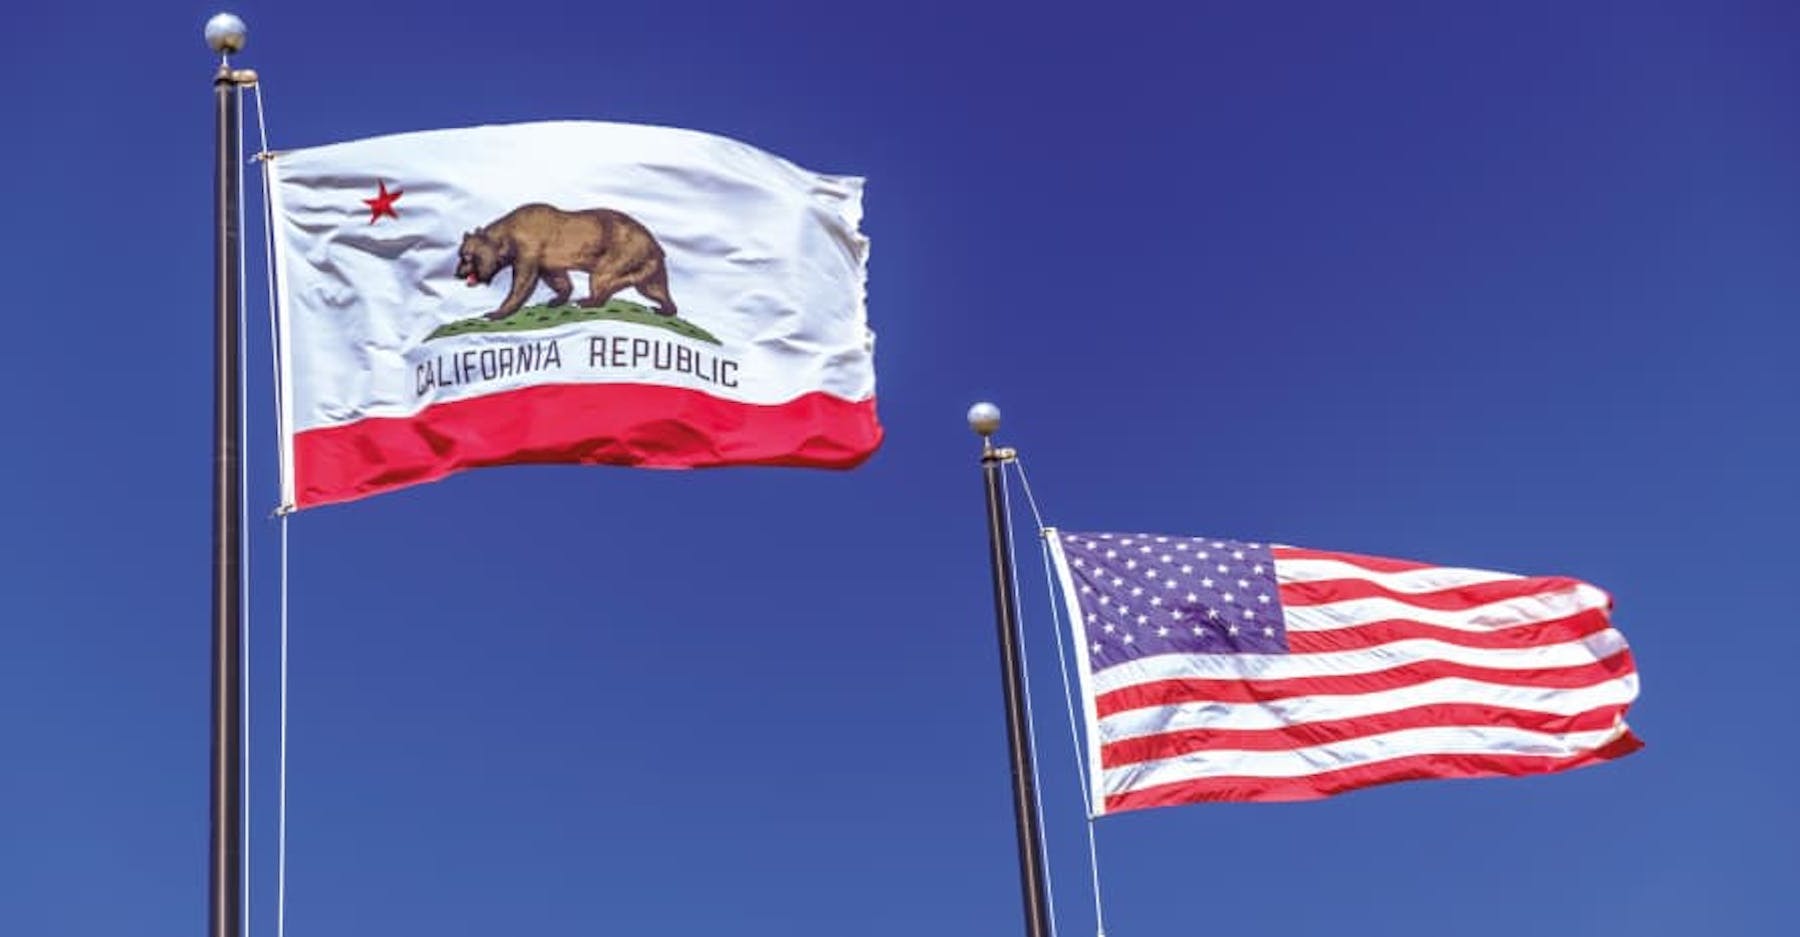 california flag and us flag navy blue sky